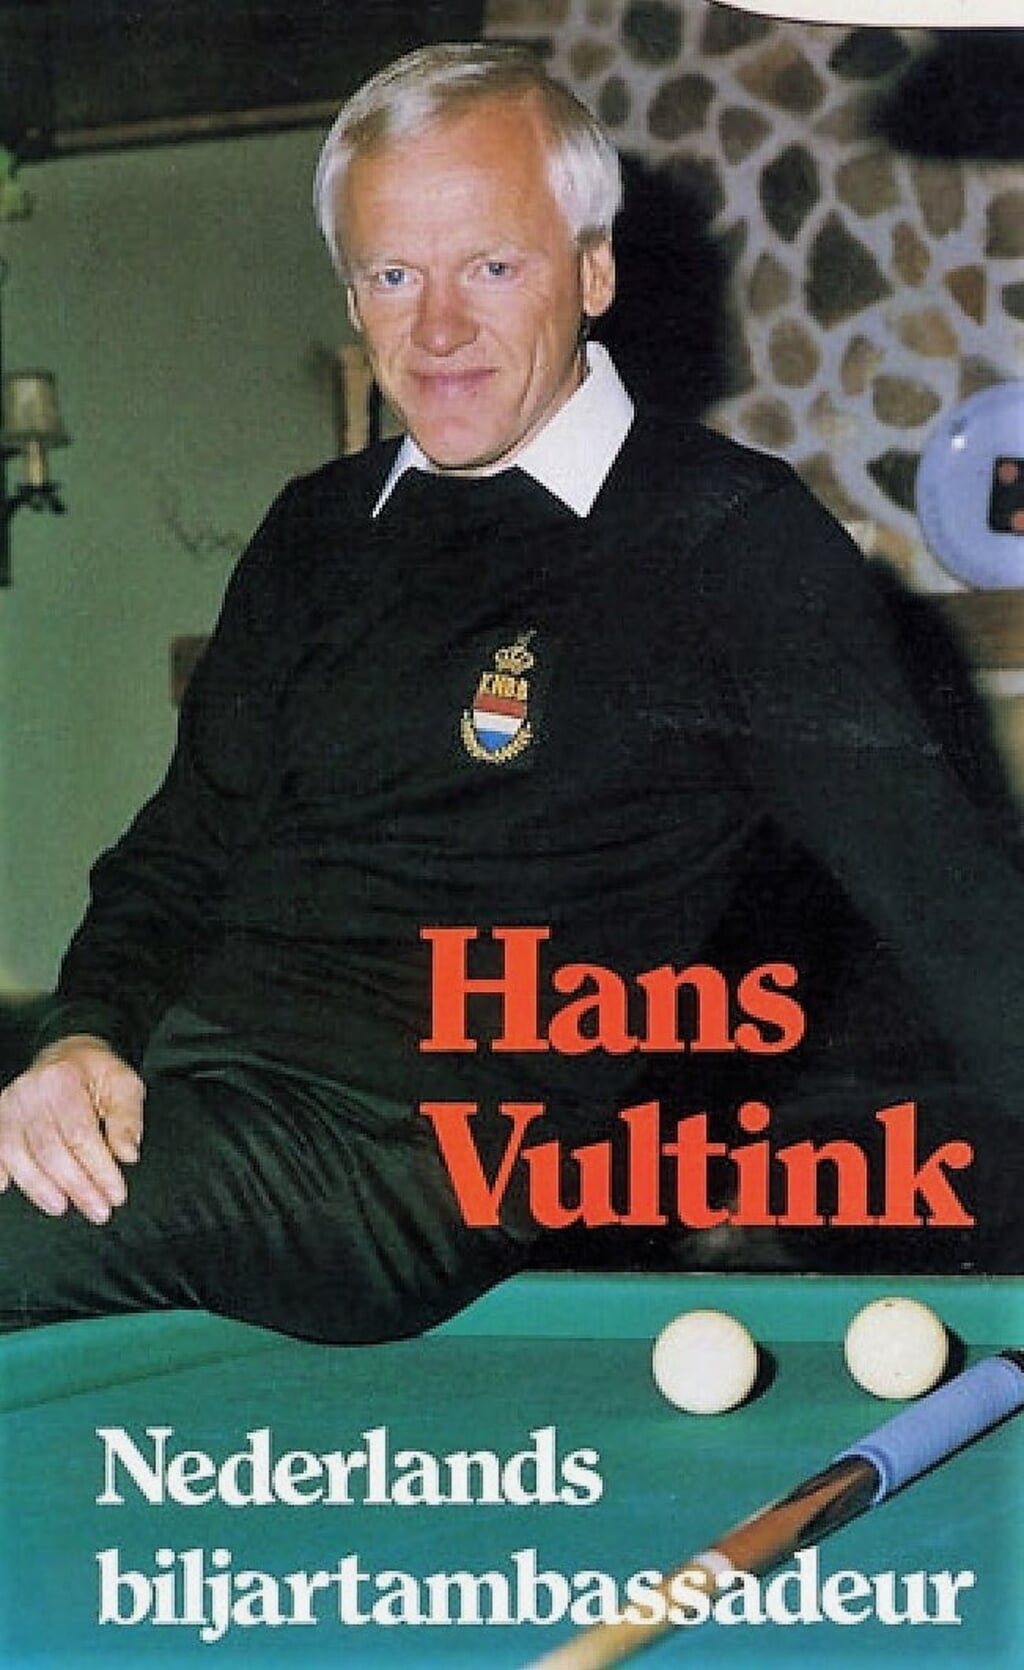 Hans Vultink in jongere jaren. Foto: PR